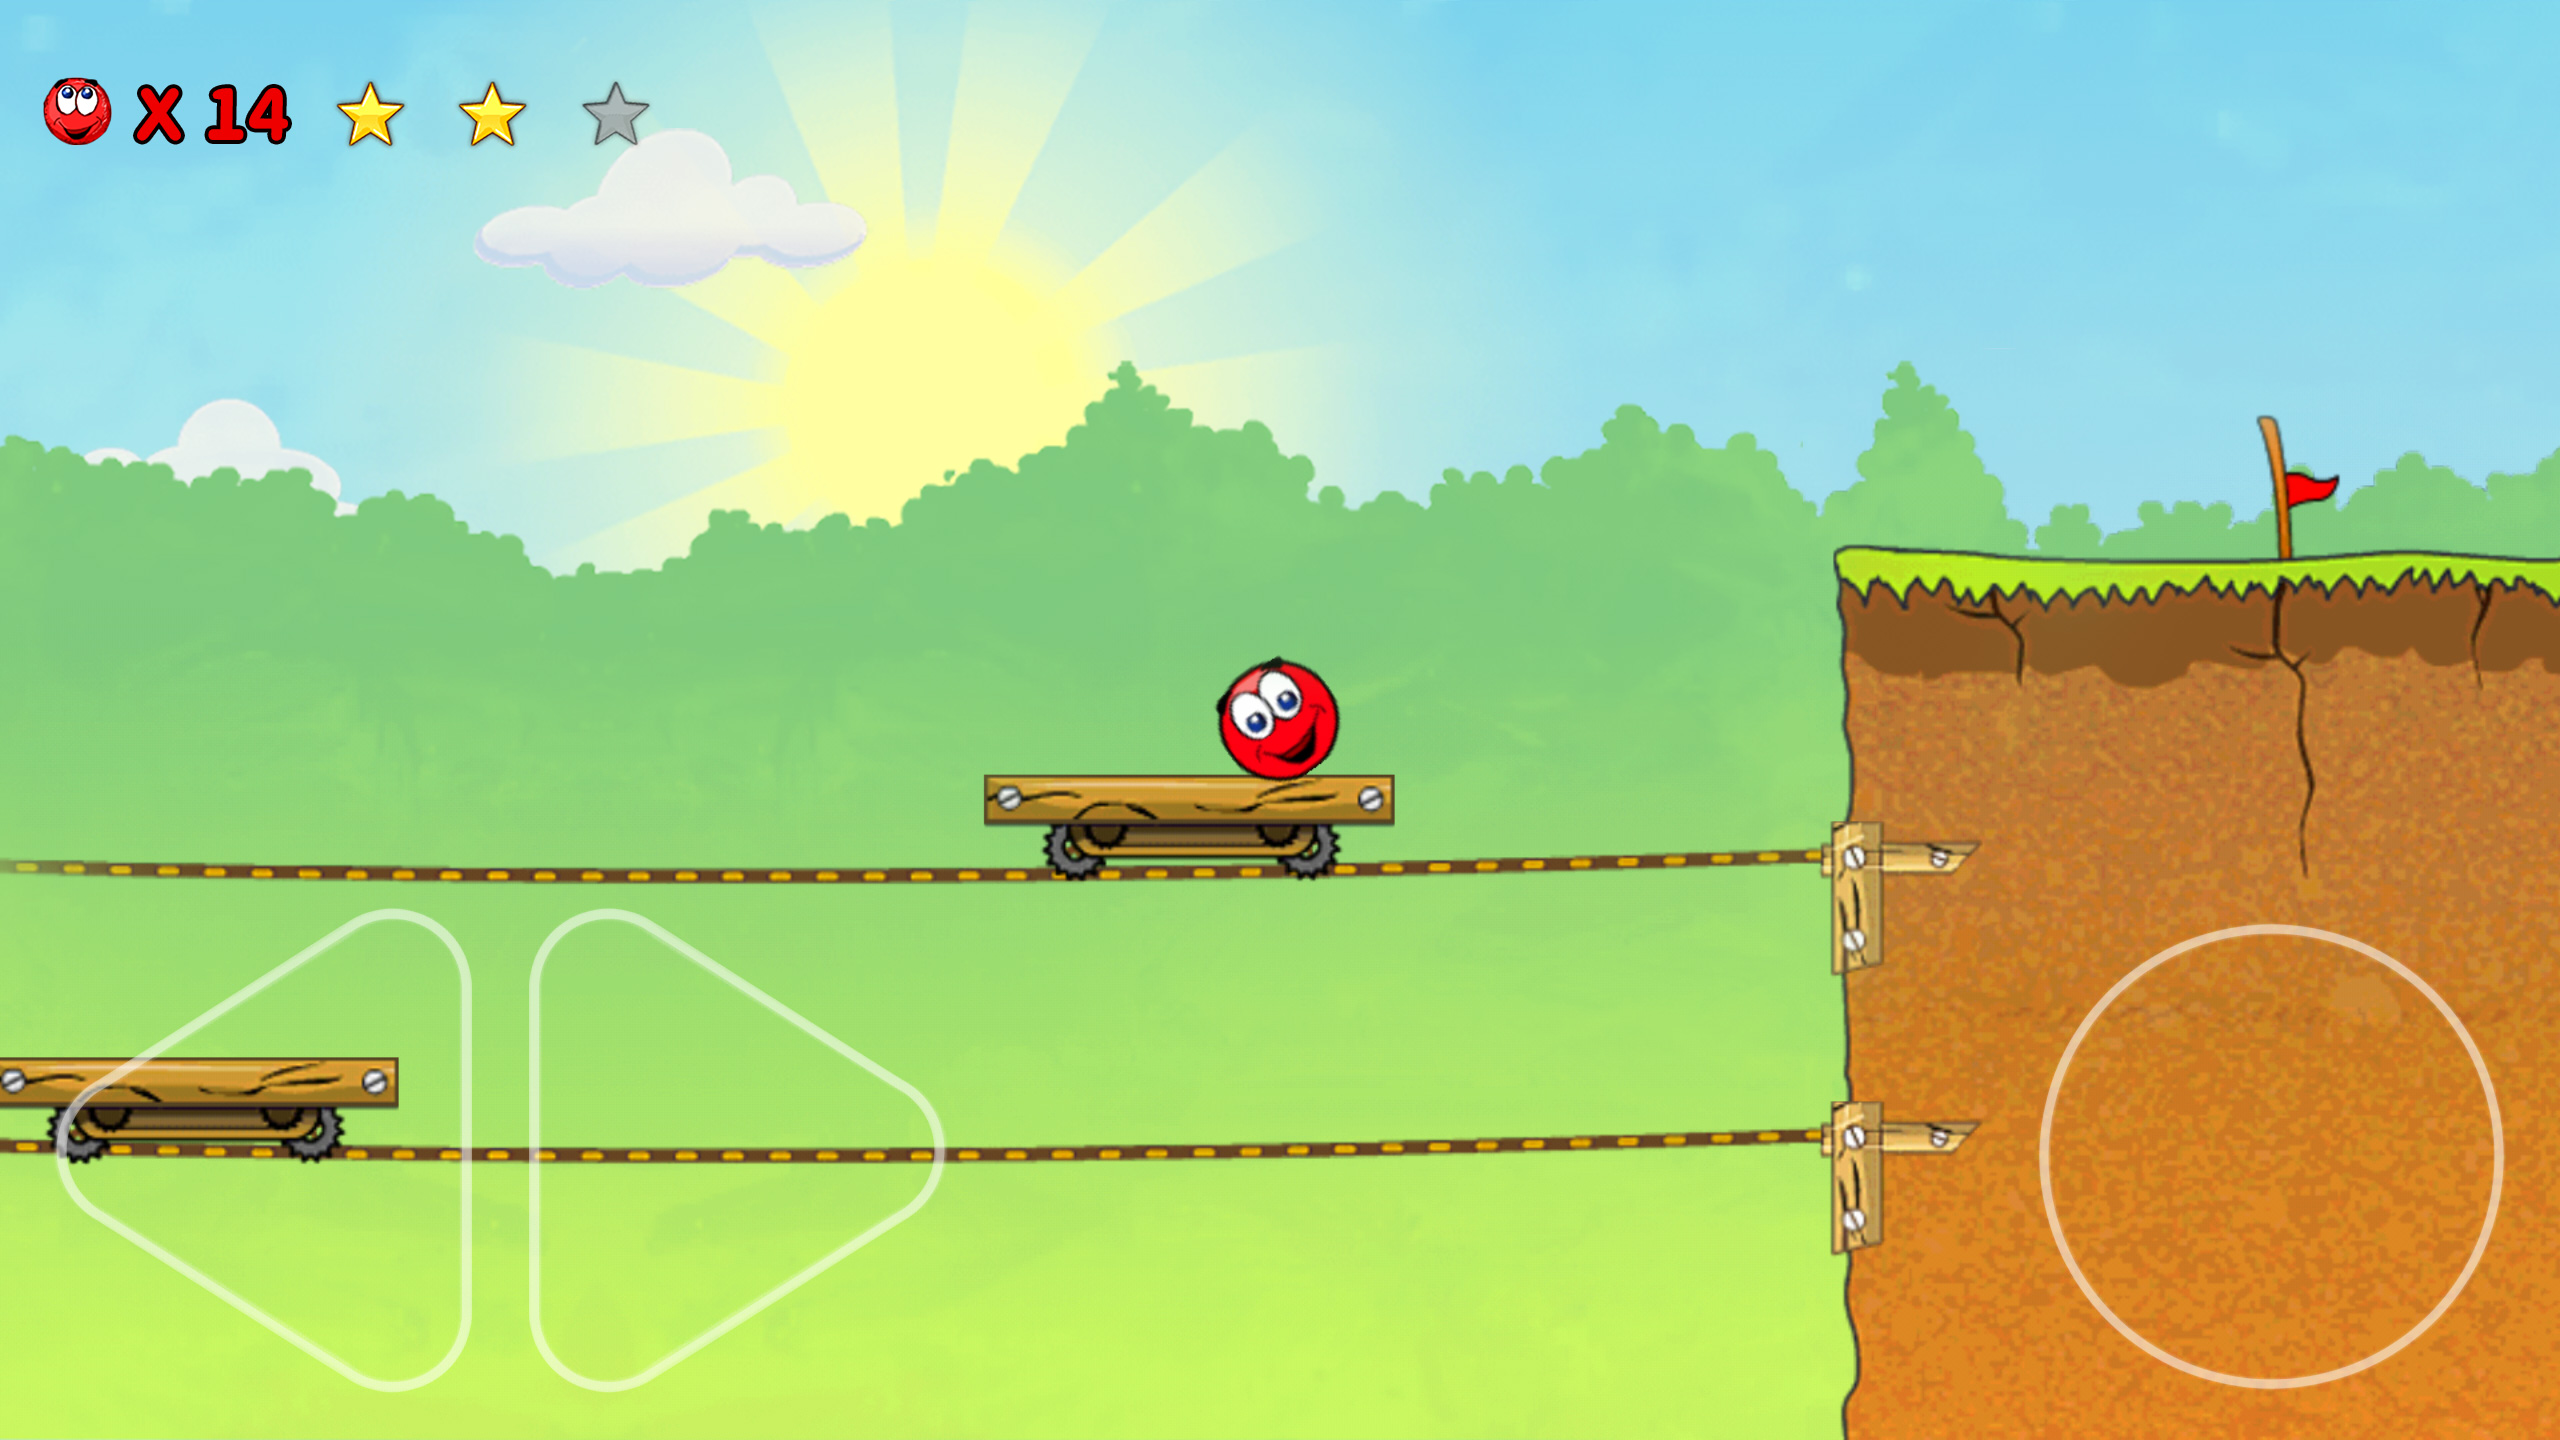 Игры прыгающие шары. Red Ball 3. Красный прыгающий шарик игра. Red baii 3. Красный мячик прыгает игра.